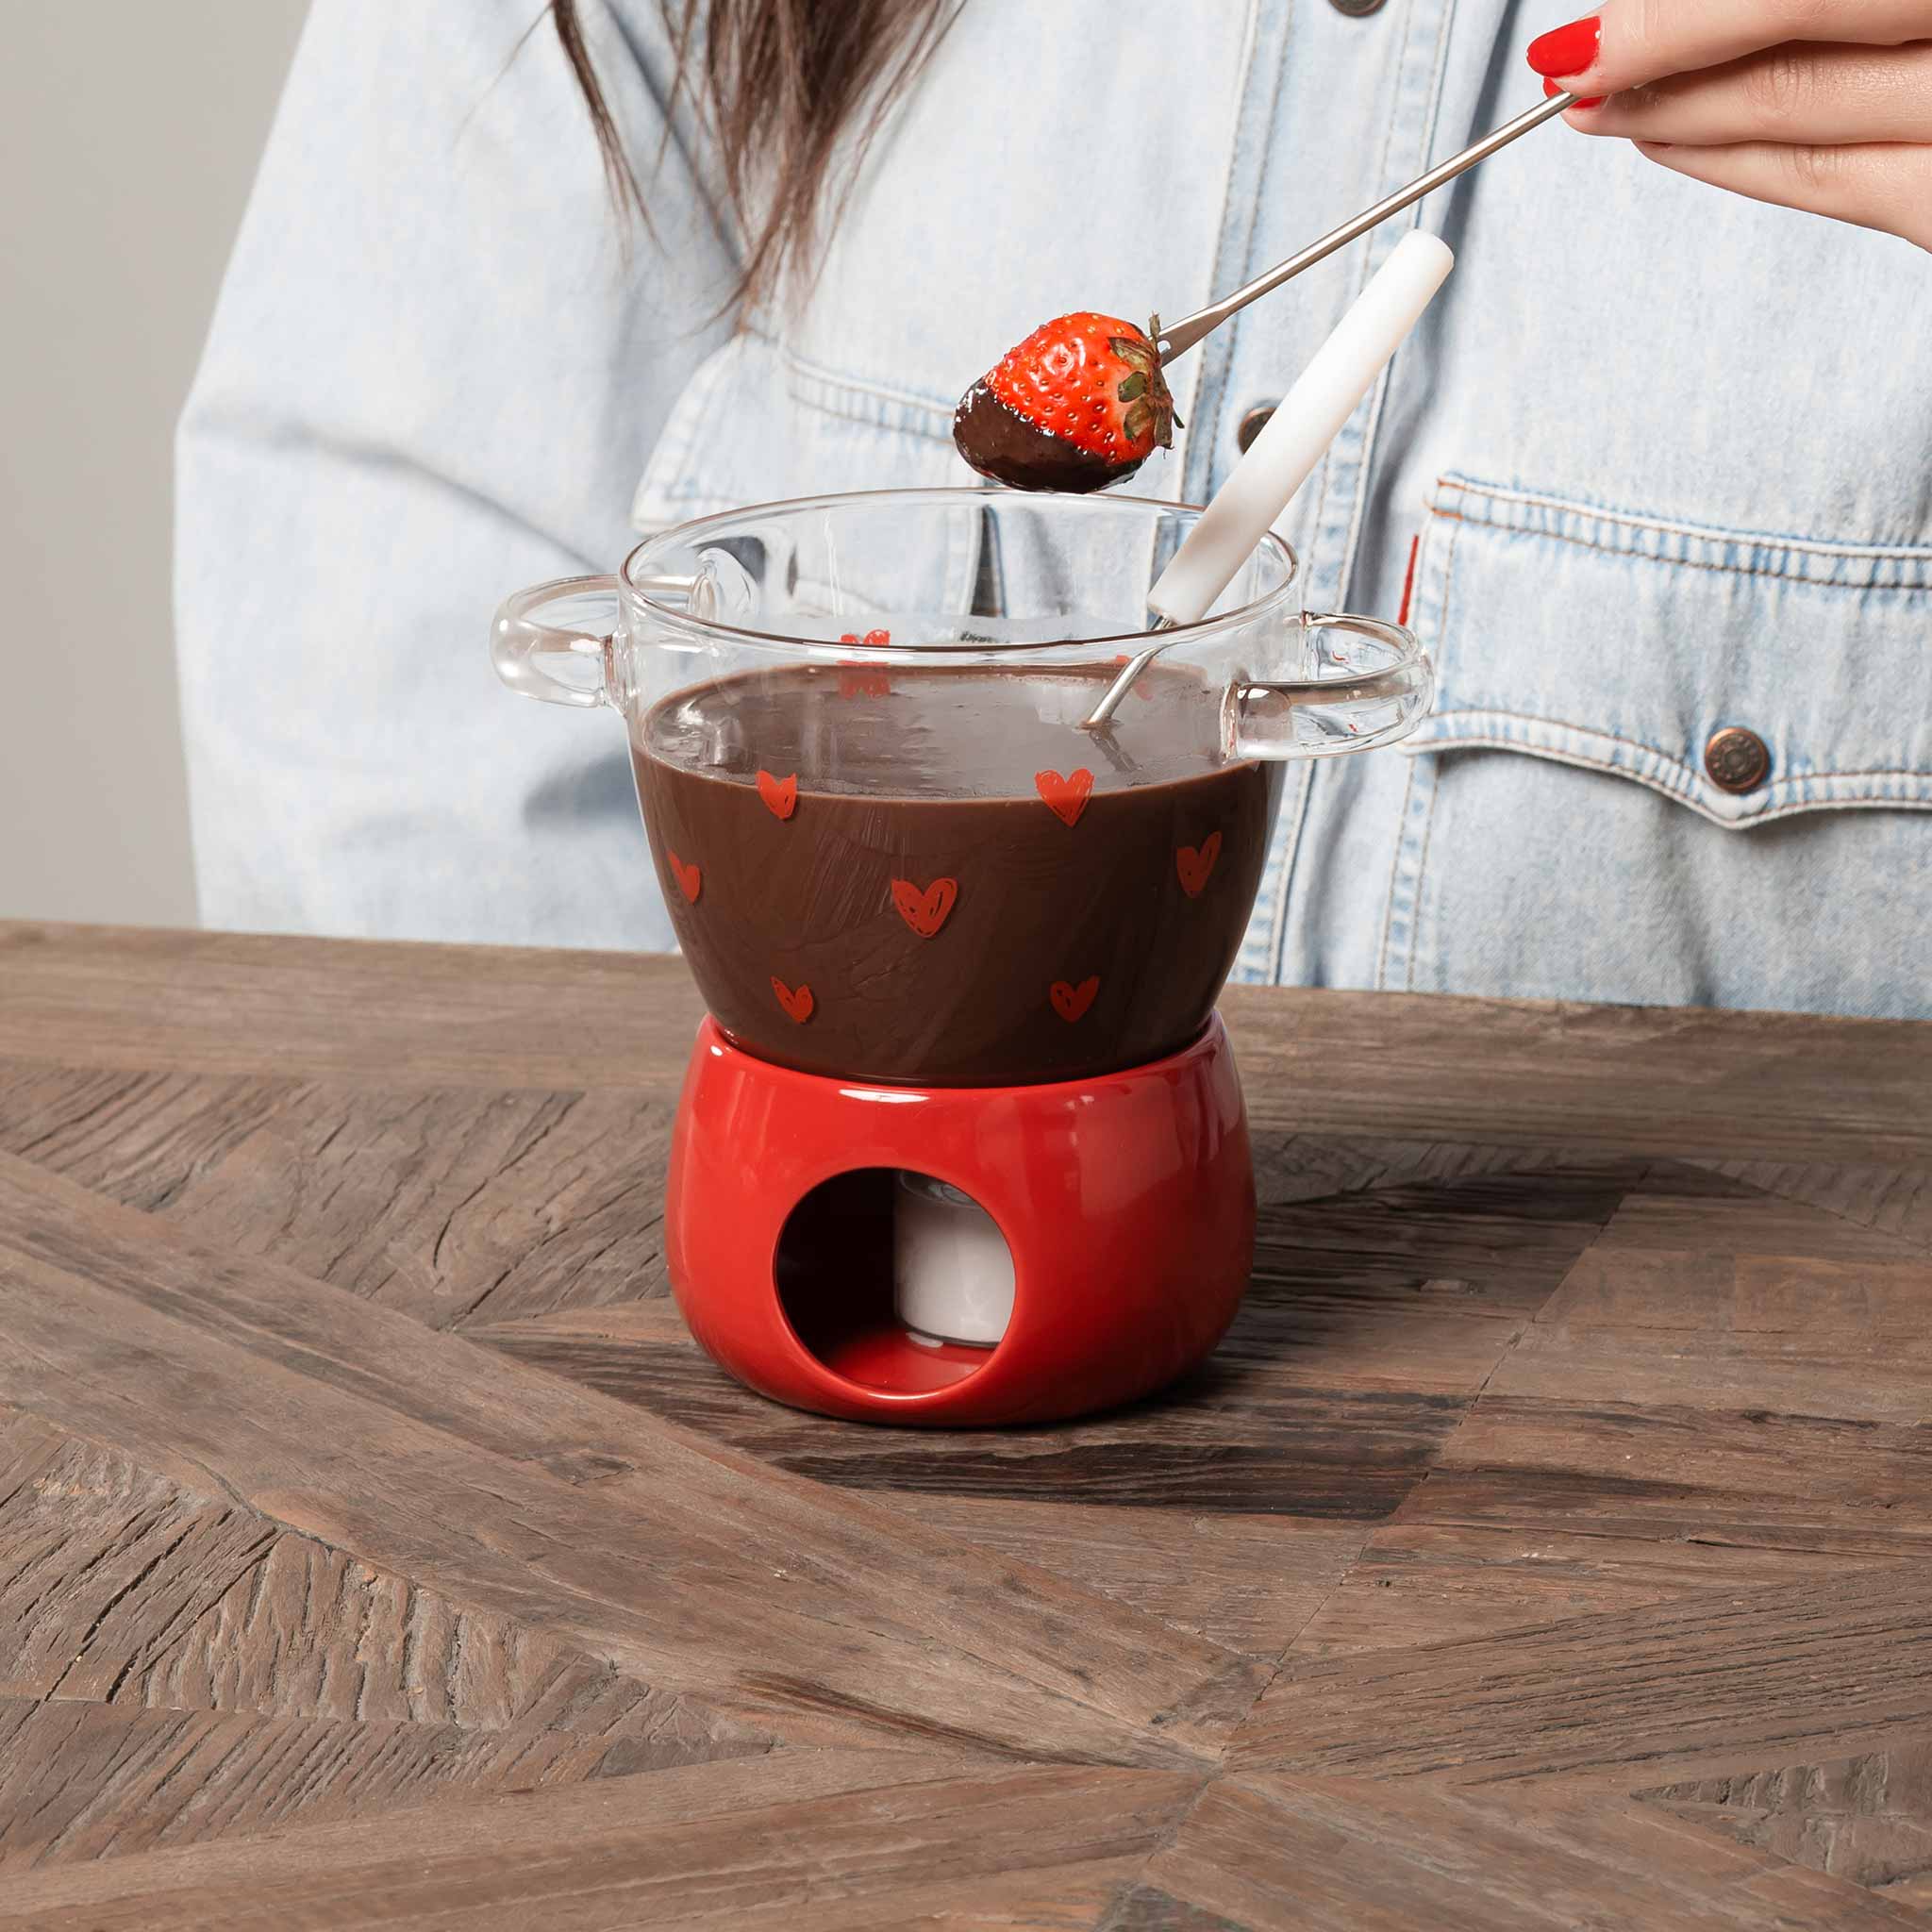 Fonduta cioccolato Tappezzeria cuori - base rossa — Simple Day